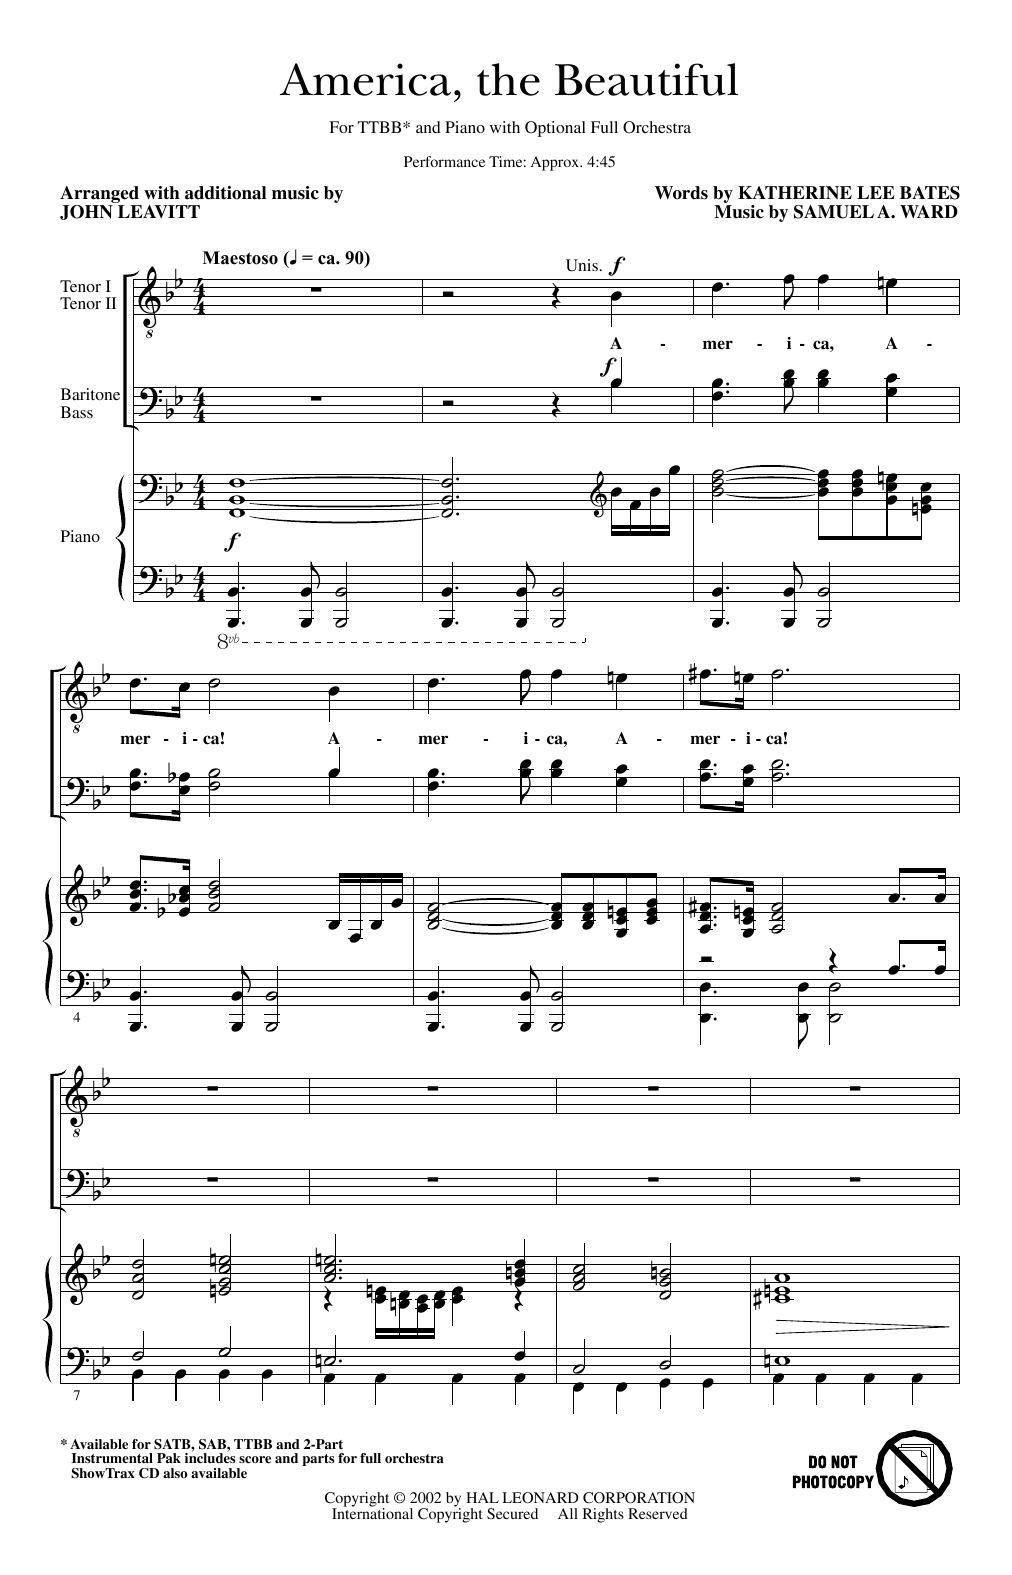 Samuel A. Ward America, The Beautiful (arr. John Leavitt) sheet music notes and chords arranged for TTBB Choir